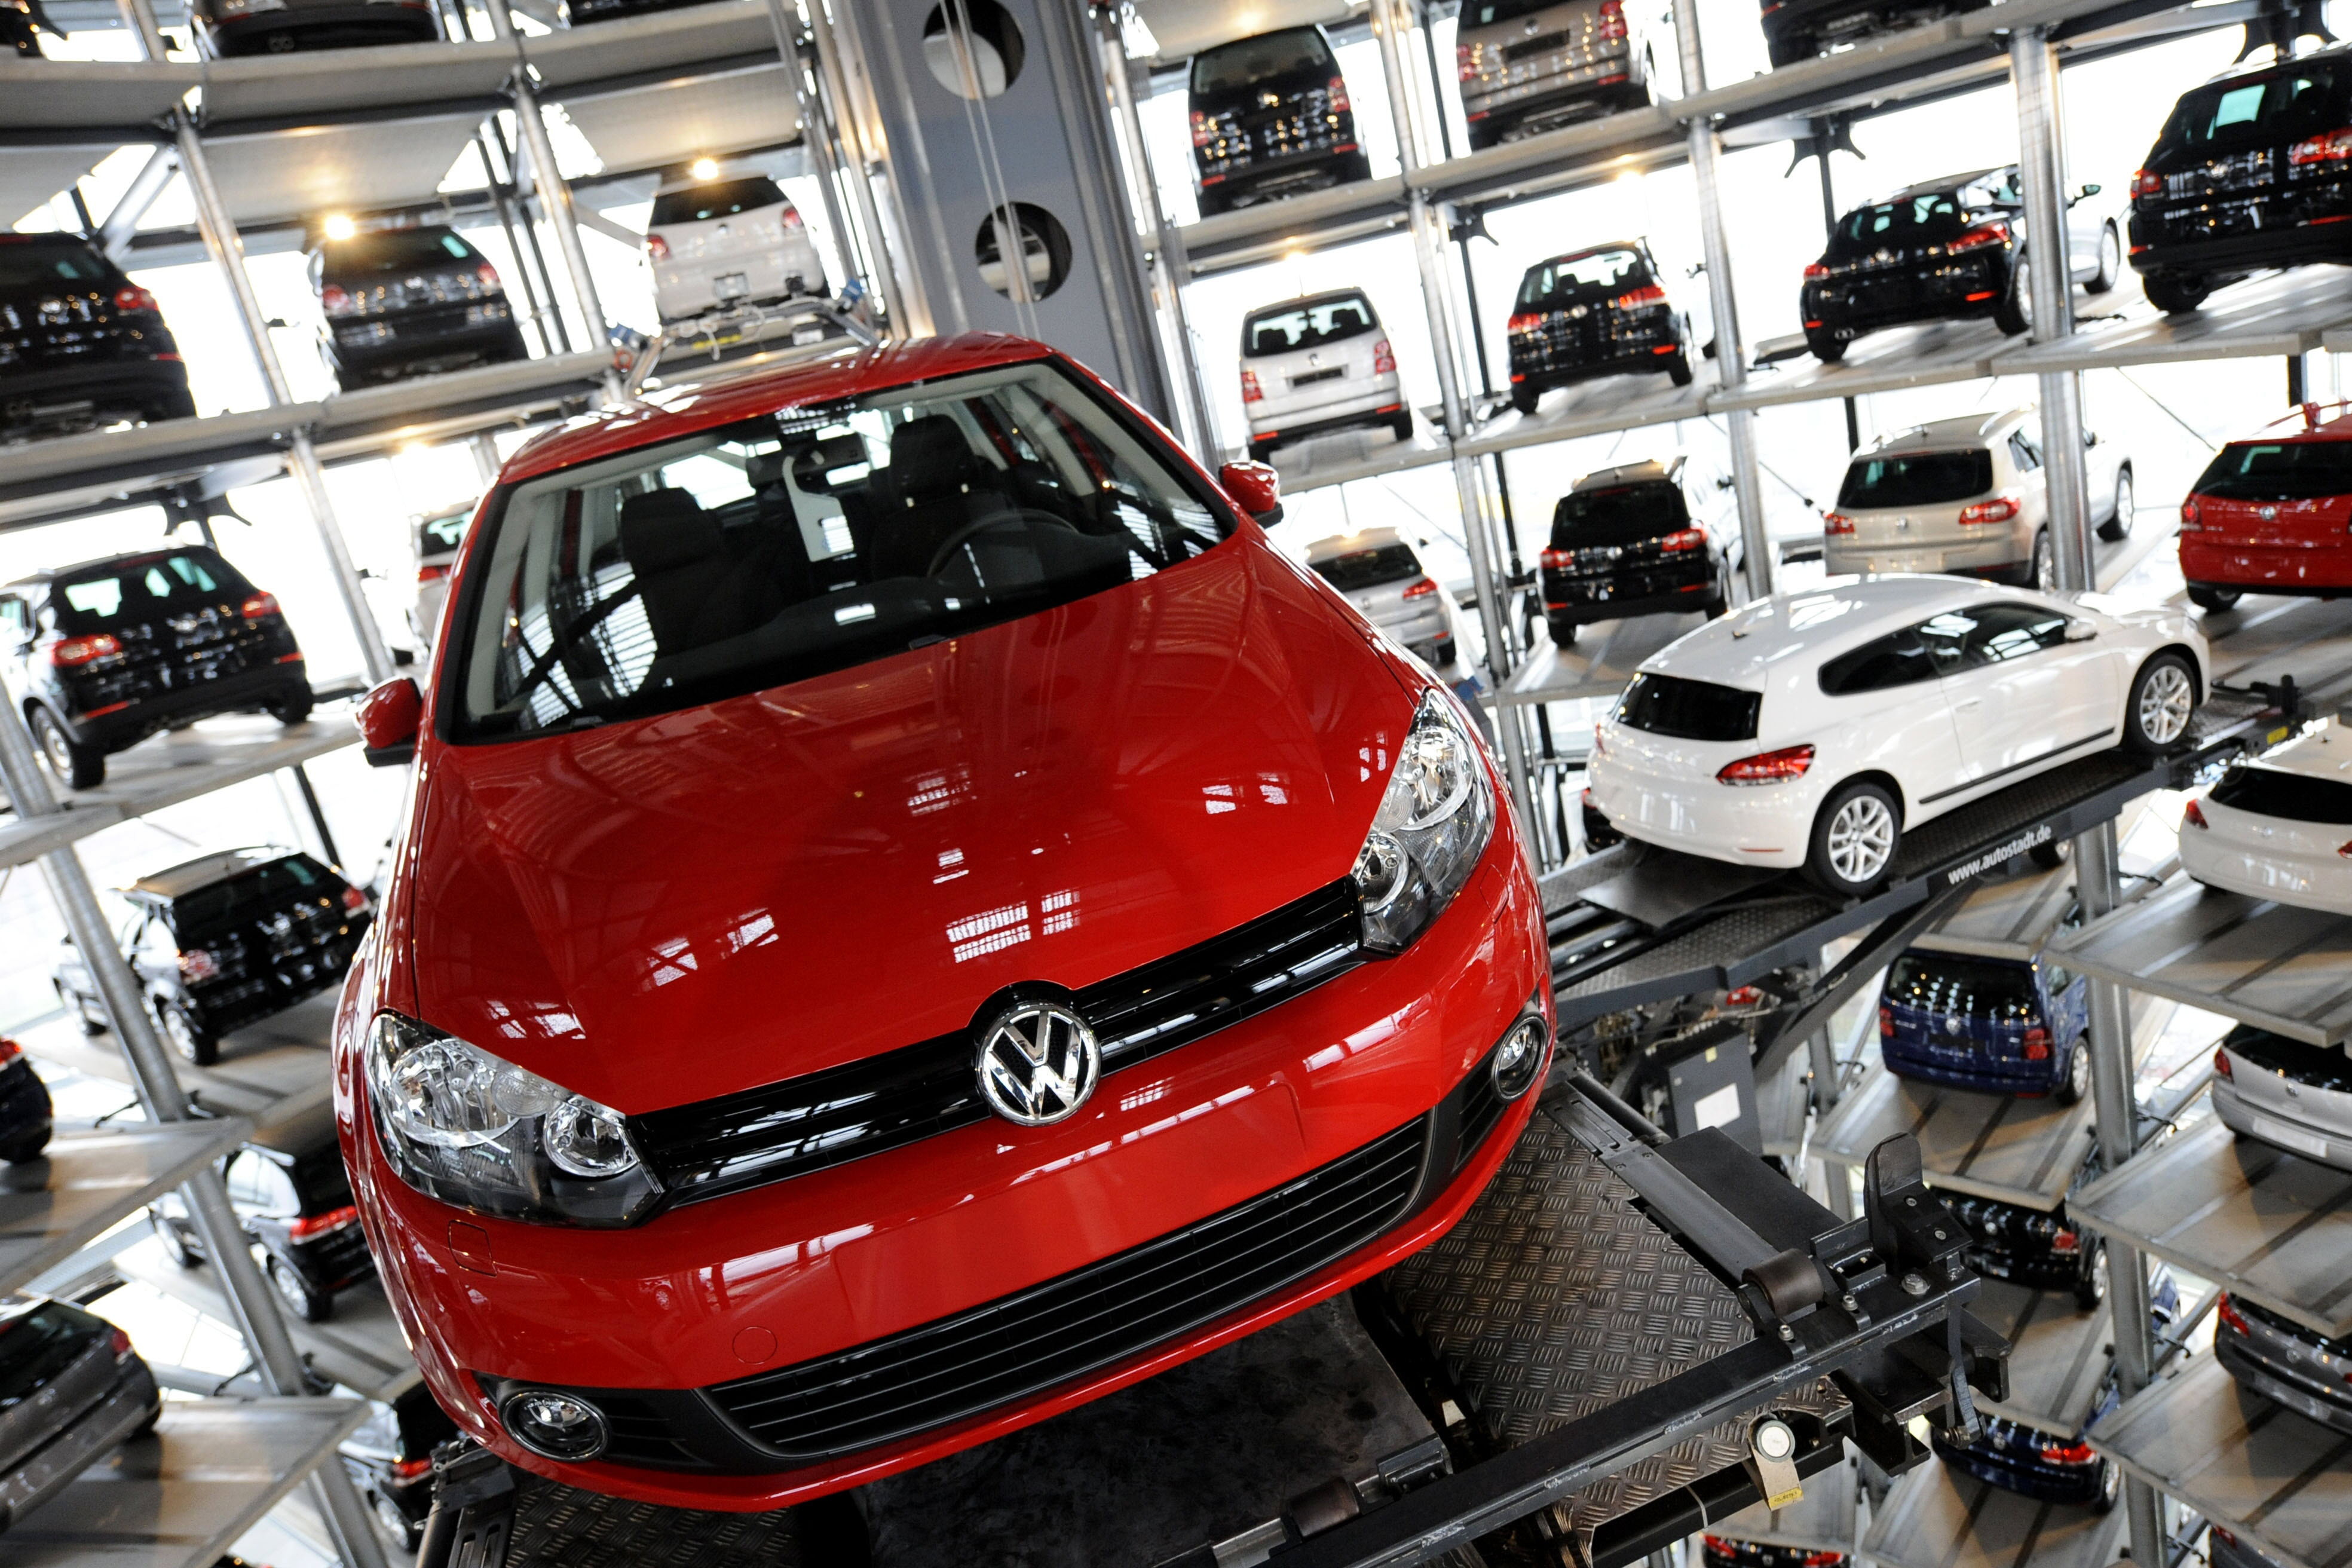 Proprietarii germani de Volkswagen riscă să-şi piardă dreptul de circulaţie dacă nu îşi remediază maşinile afectate de Dieselgate